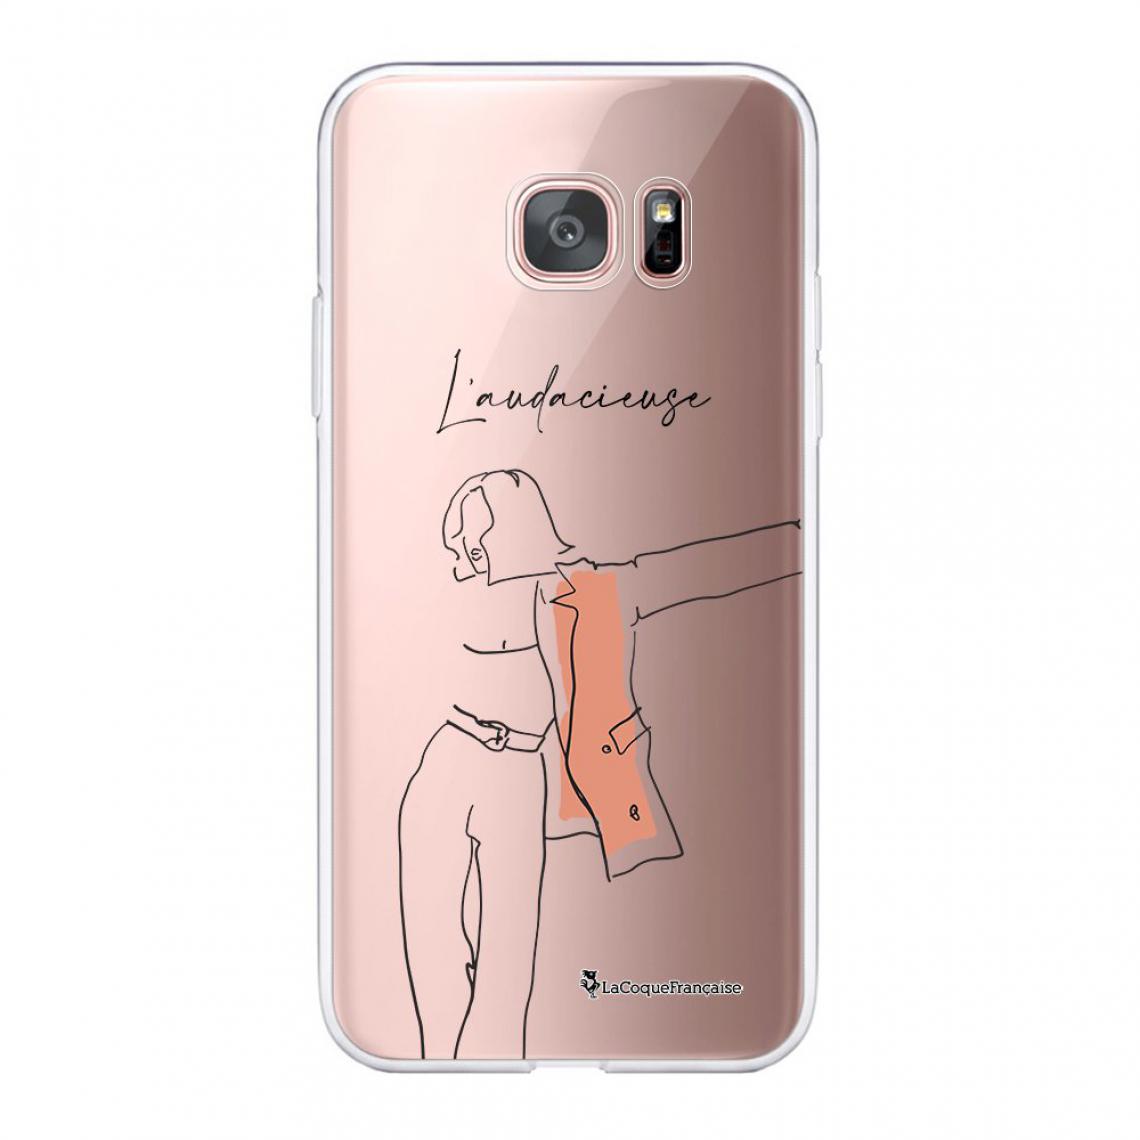 La Coque Francaise - Coque Samsung Galaxy S7 Edge 360 intégrale avant arrière transparente - Coque, étui smartphone